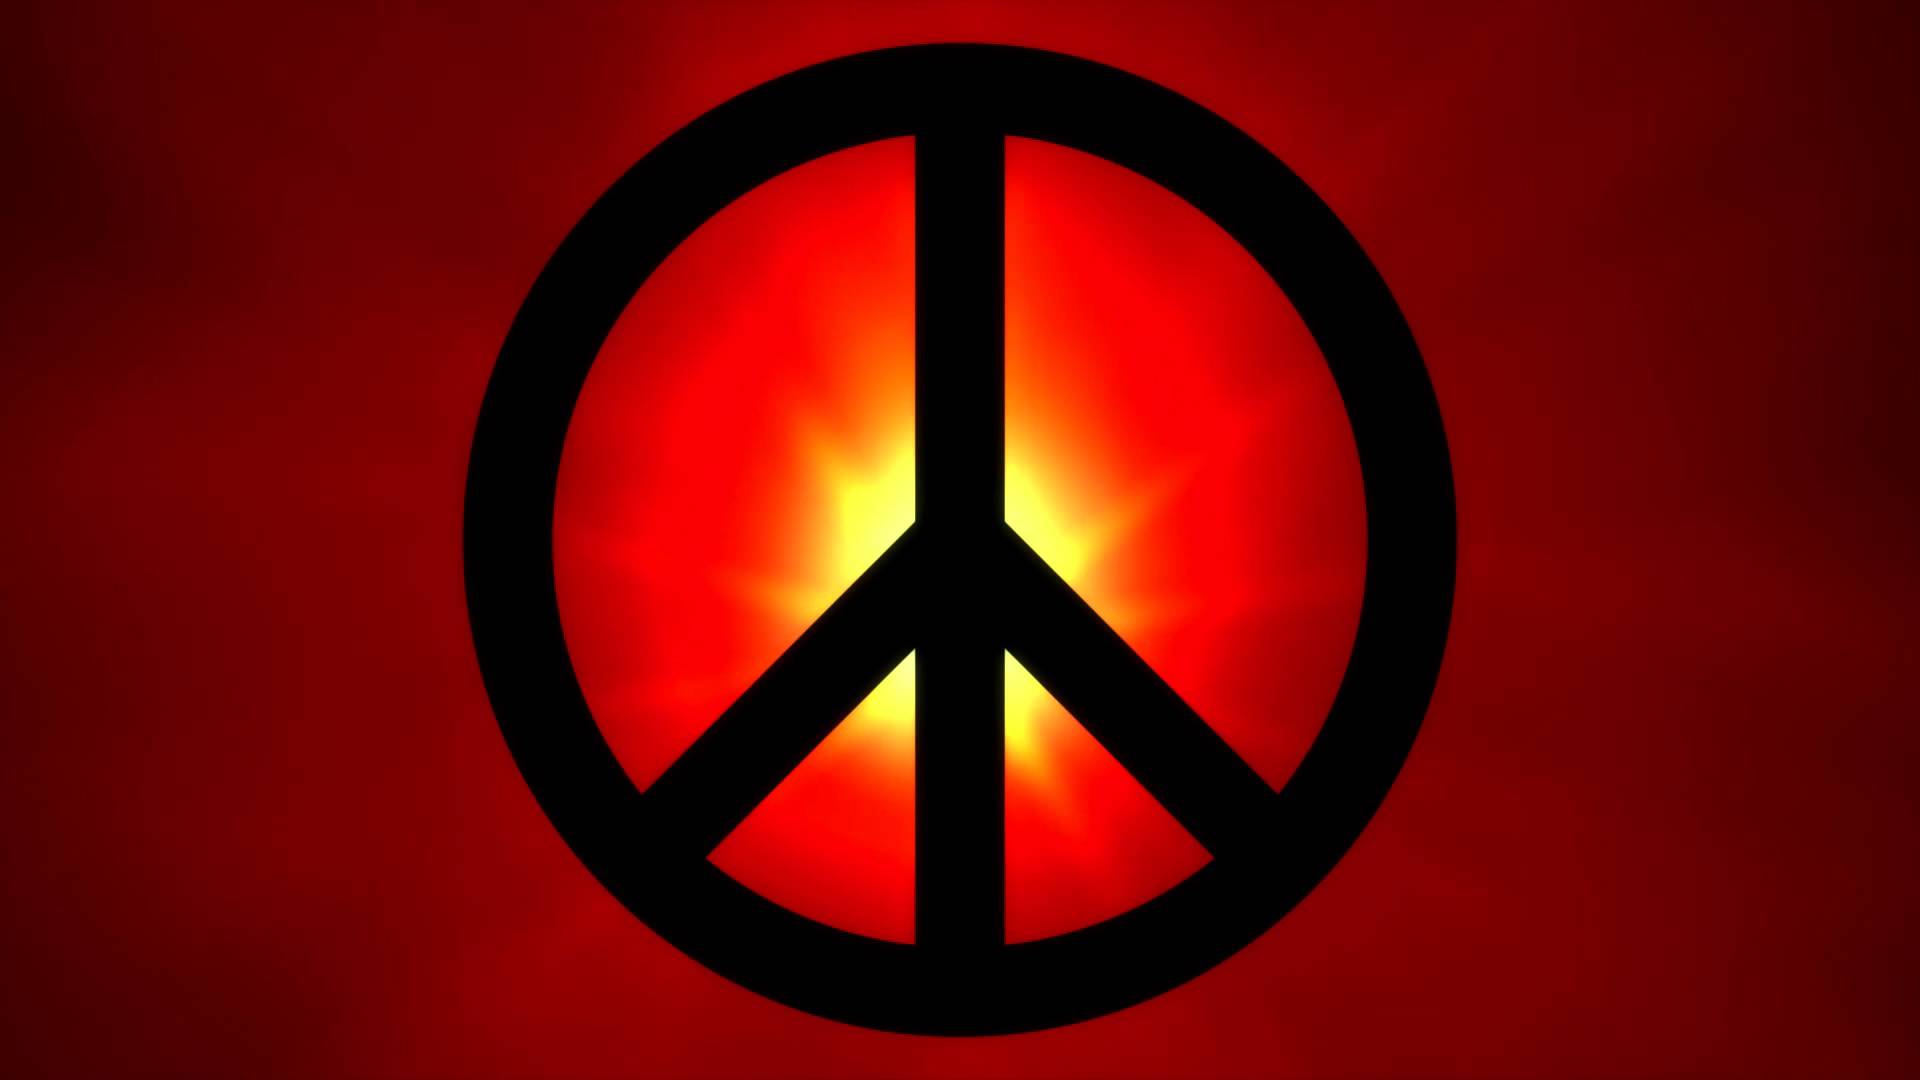 fond d'écran de paix hd,rouge,orange,symbole,symboles de paix,cercle